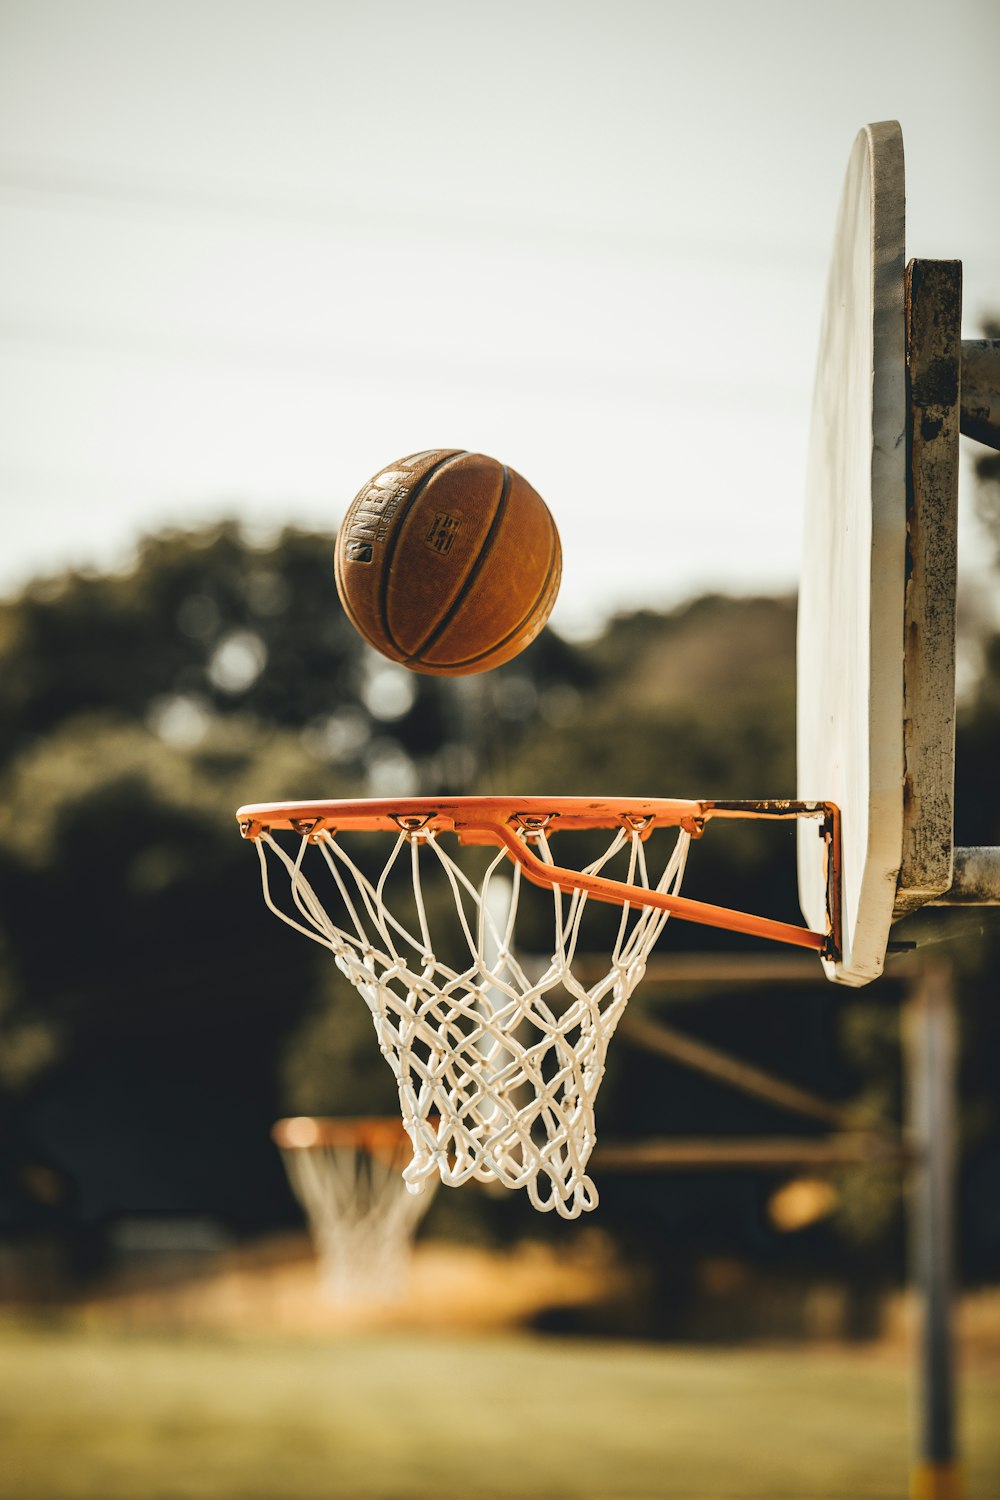 Baloncesto marrón en el aro de baloncesto